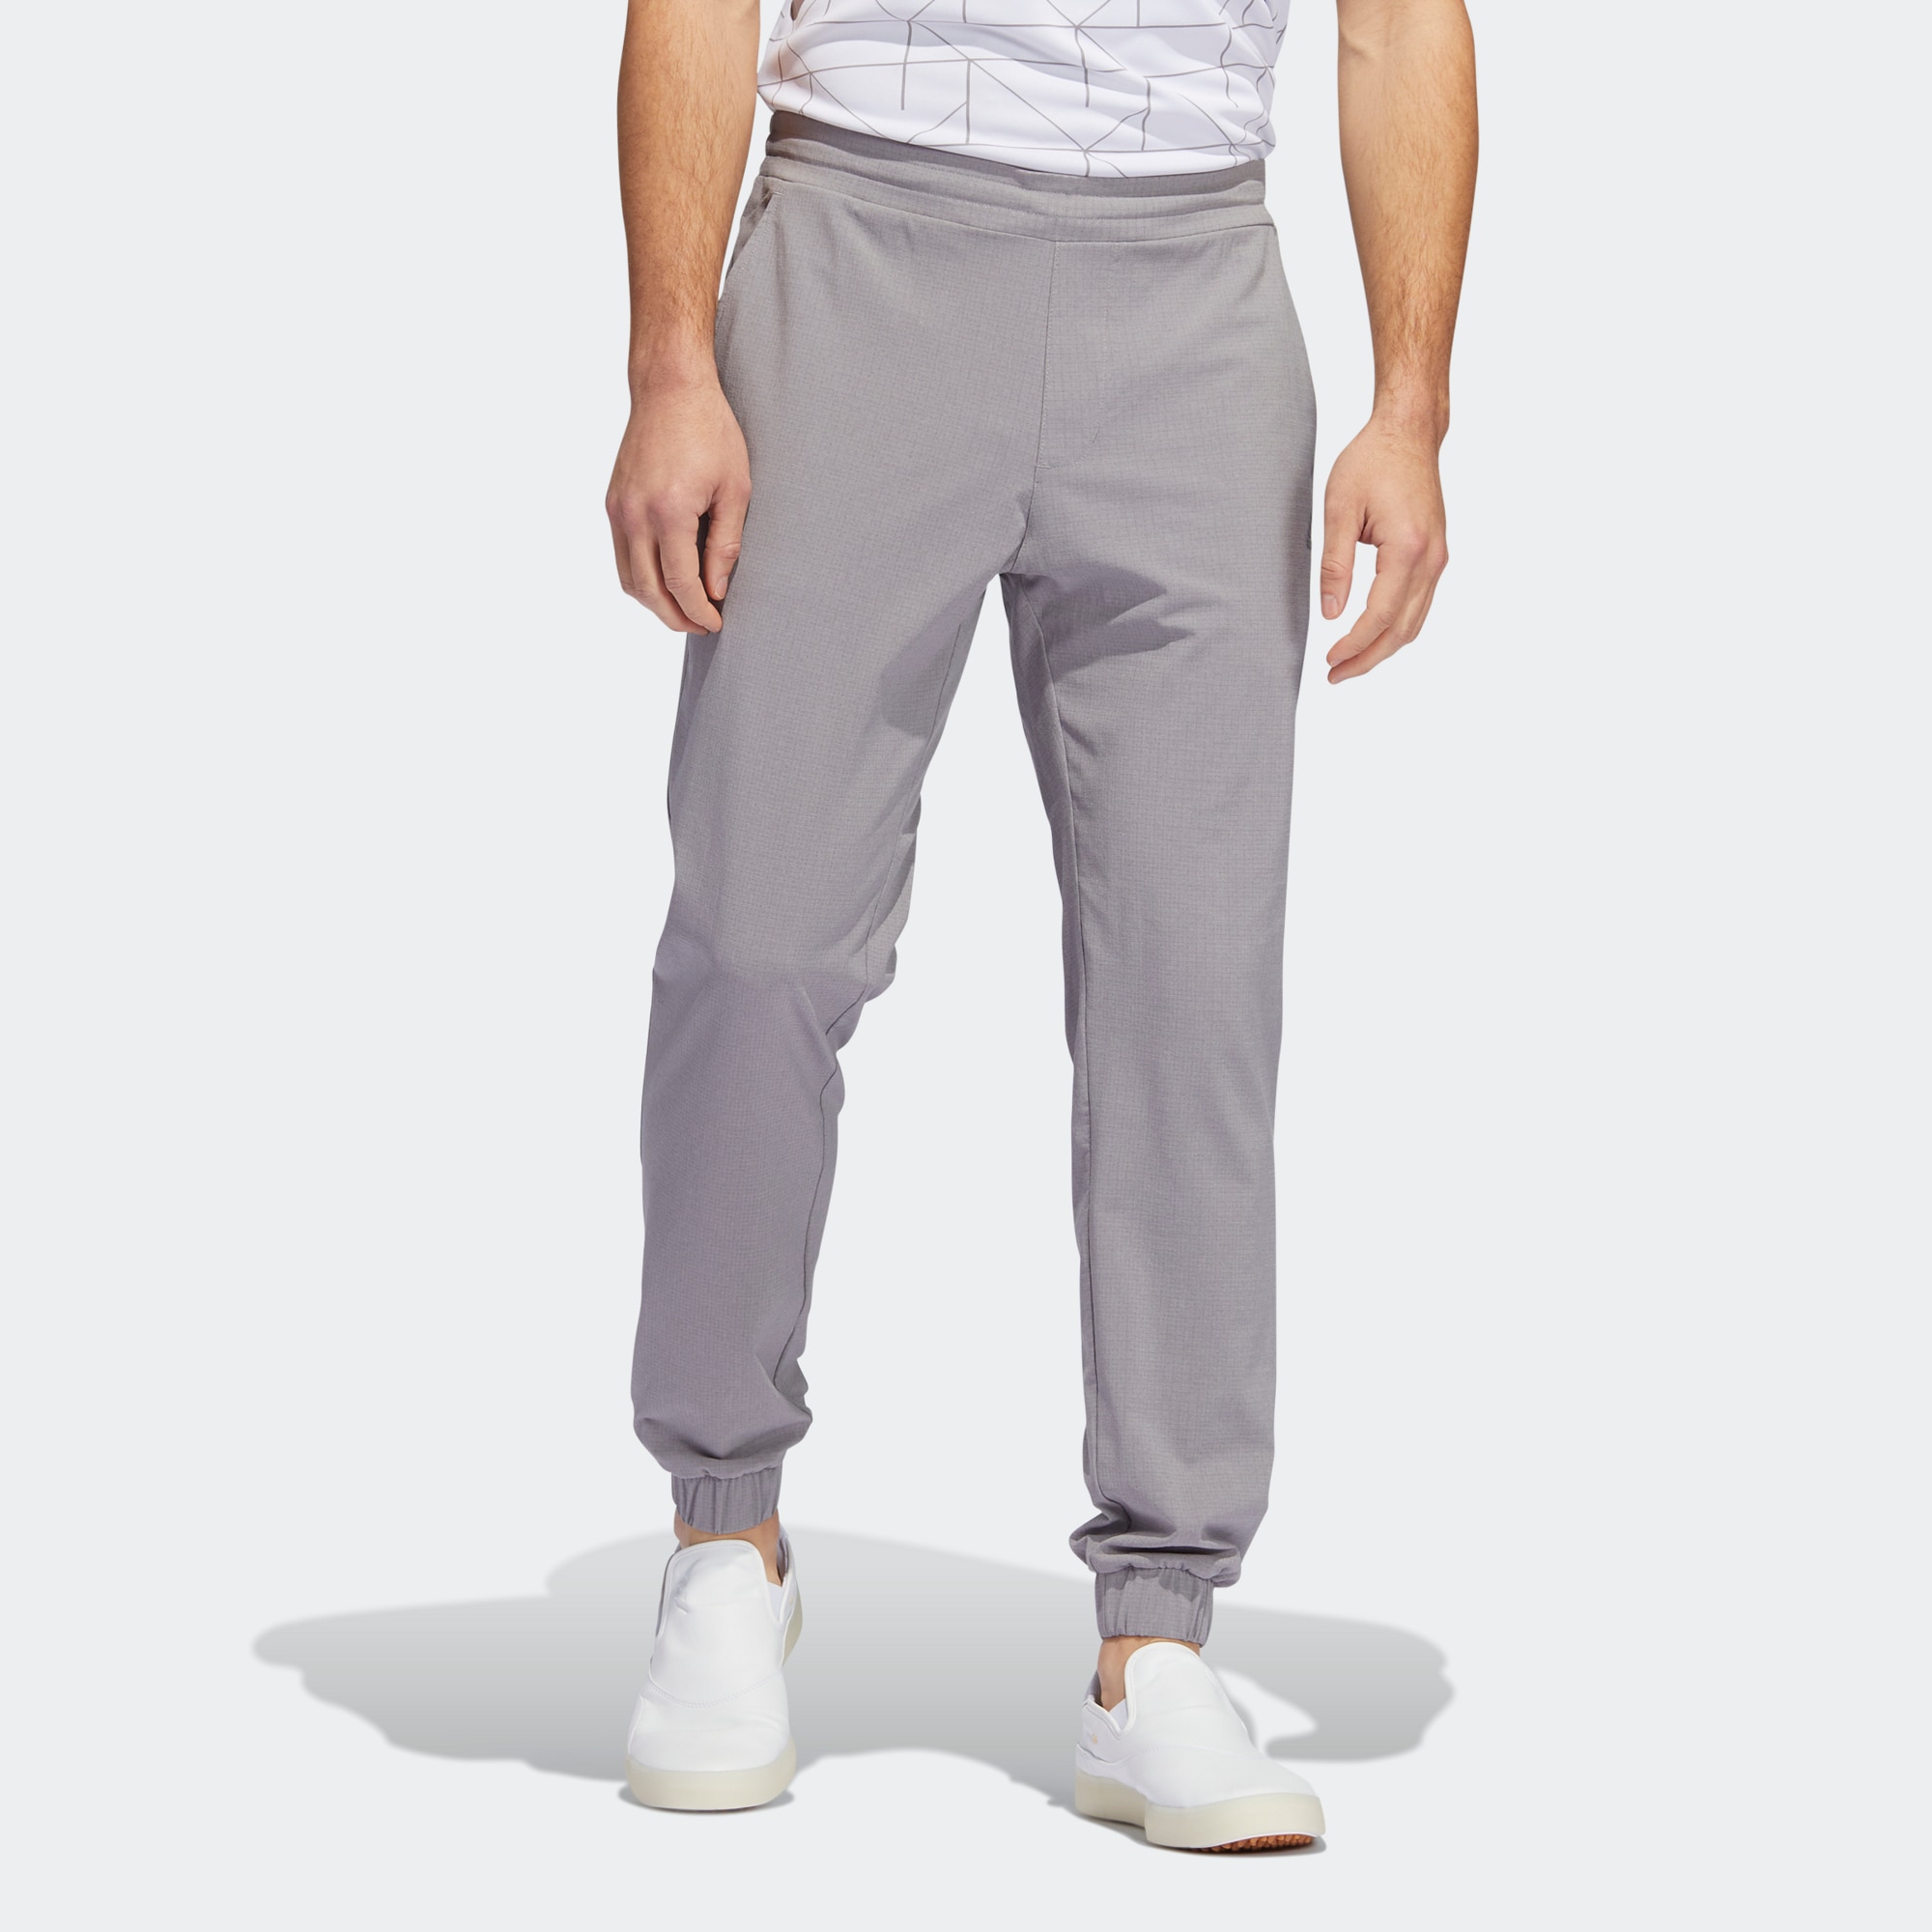 Купить брюки Мужские брюки adidas HEAT.RDY JOGGER PANTS HG3669 в Москве